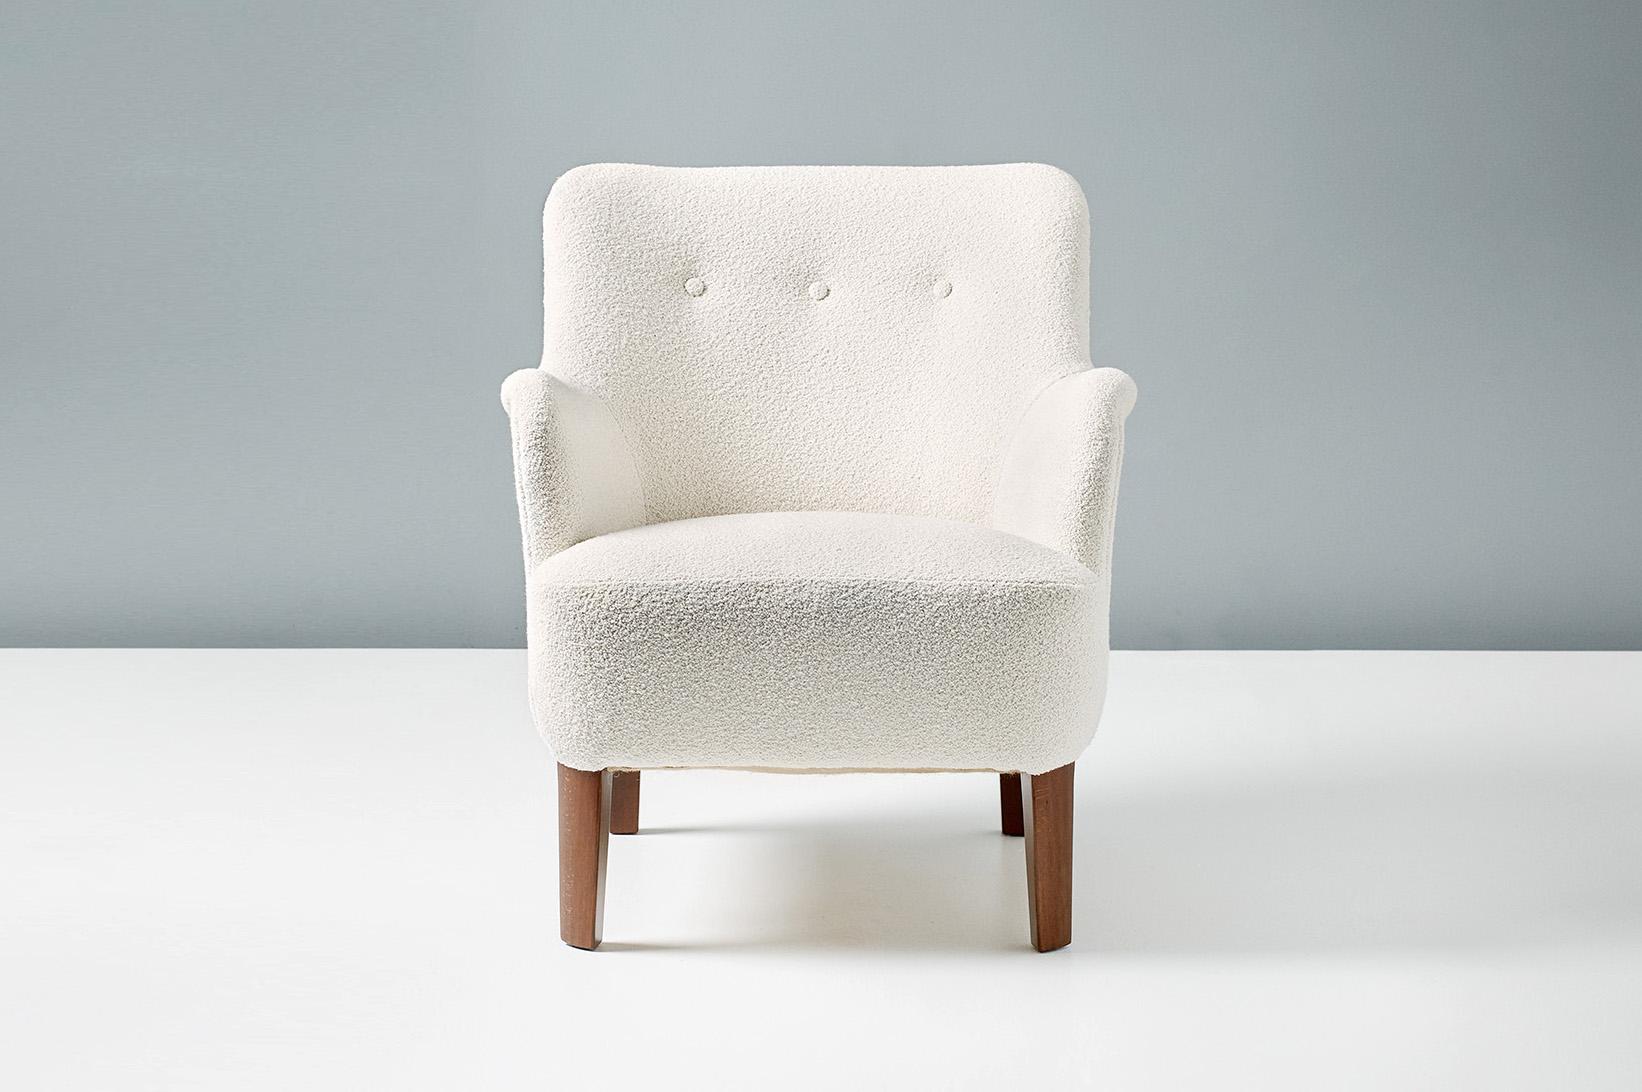 Peter Hvidt

Modell 1748 Sessel, ca. 1940er Jahre

Dieser elegante Loungesessel mit niedriger Rückenlehne wurde in den späten 1940er Jahren von Fritz Hansen in Dänemark von dem Meisterdesigner Peter Hvidt hergestellt. Die Buchenholzbeine wurden